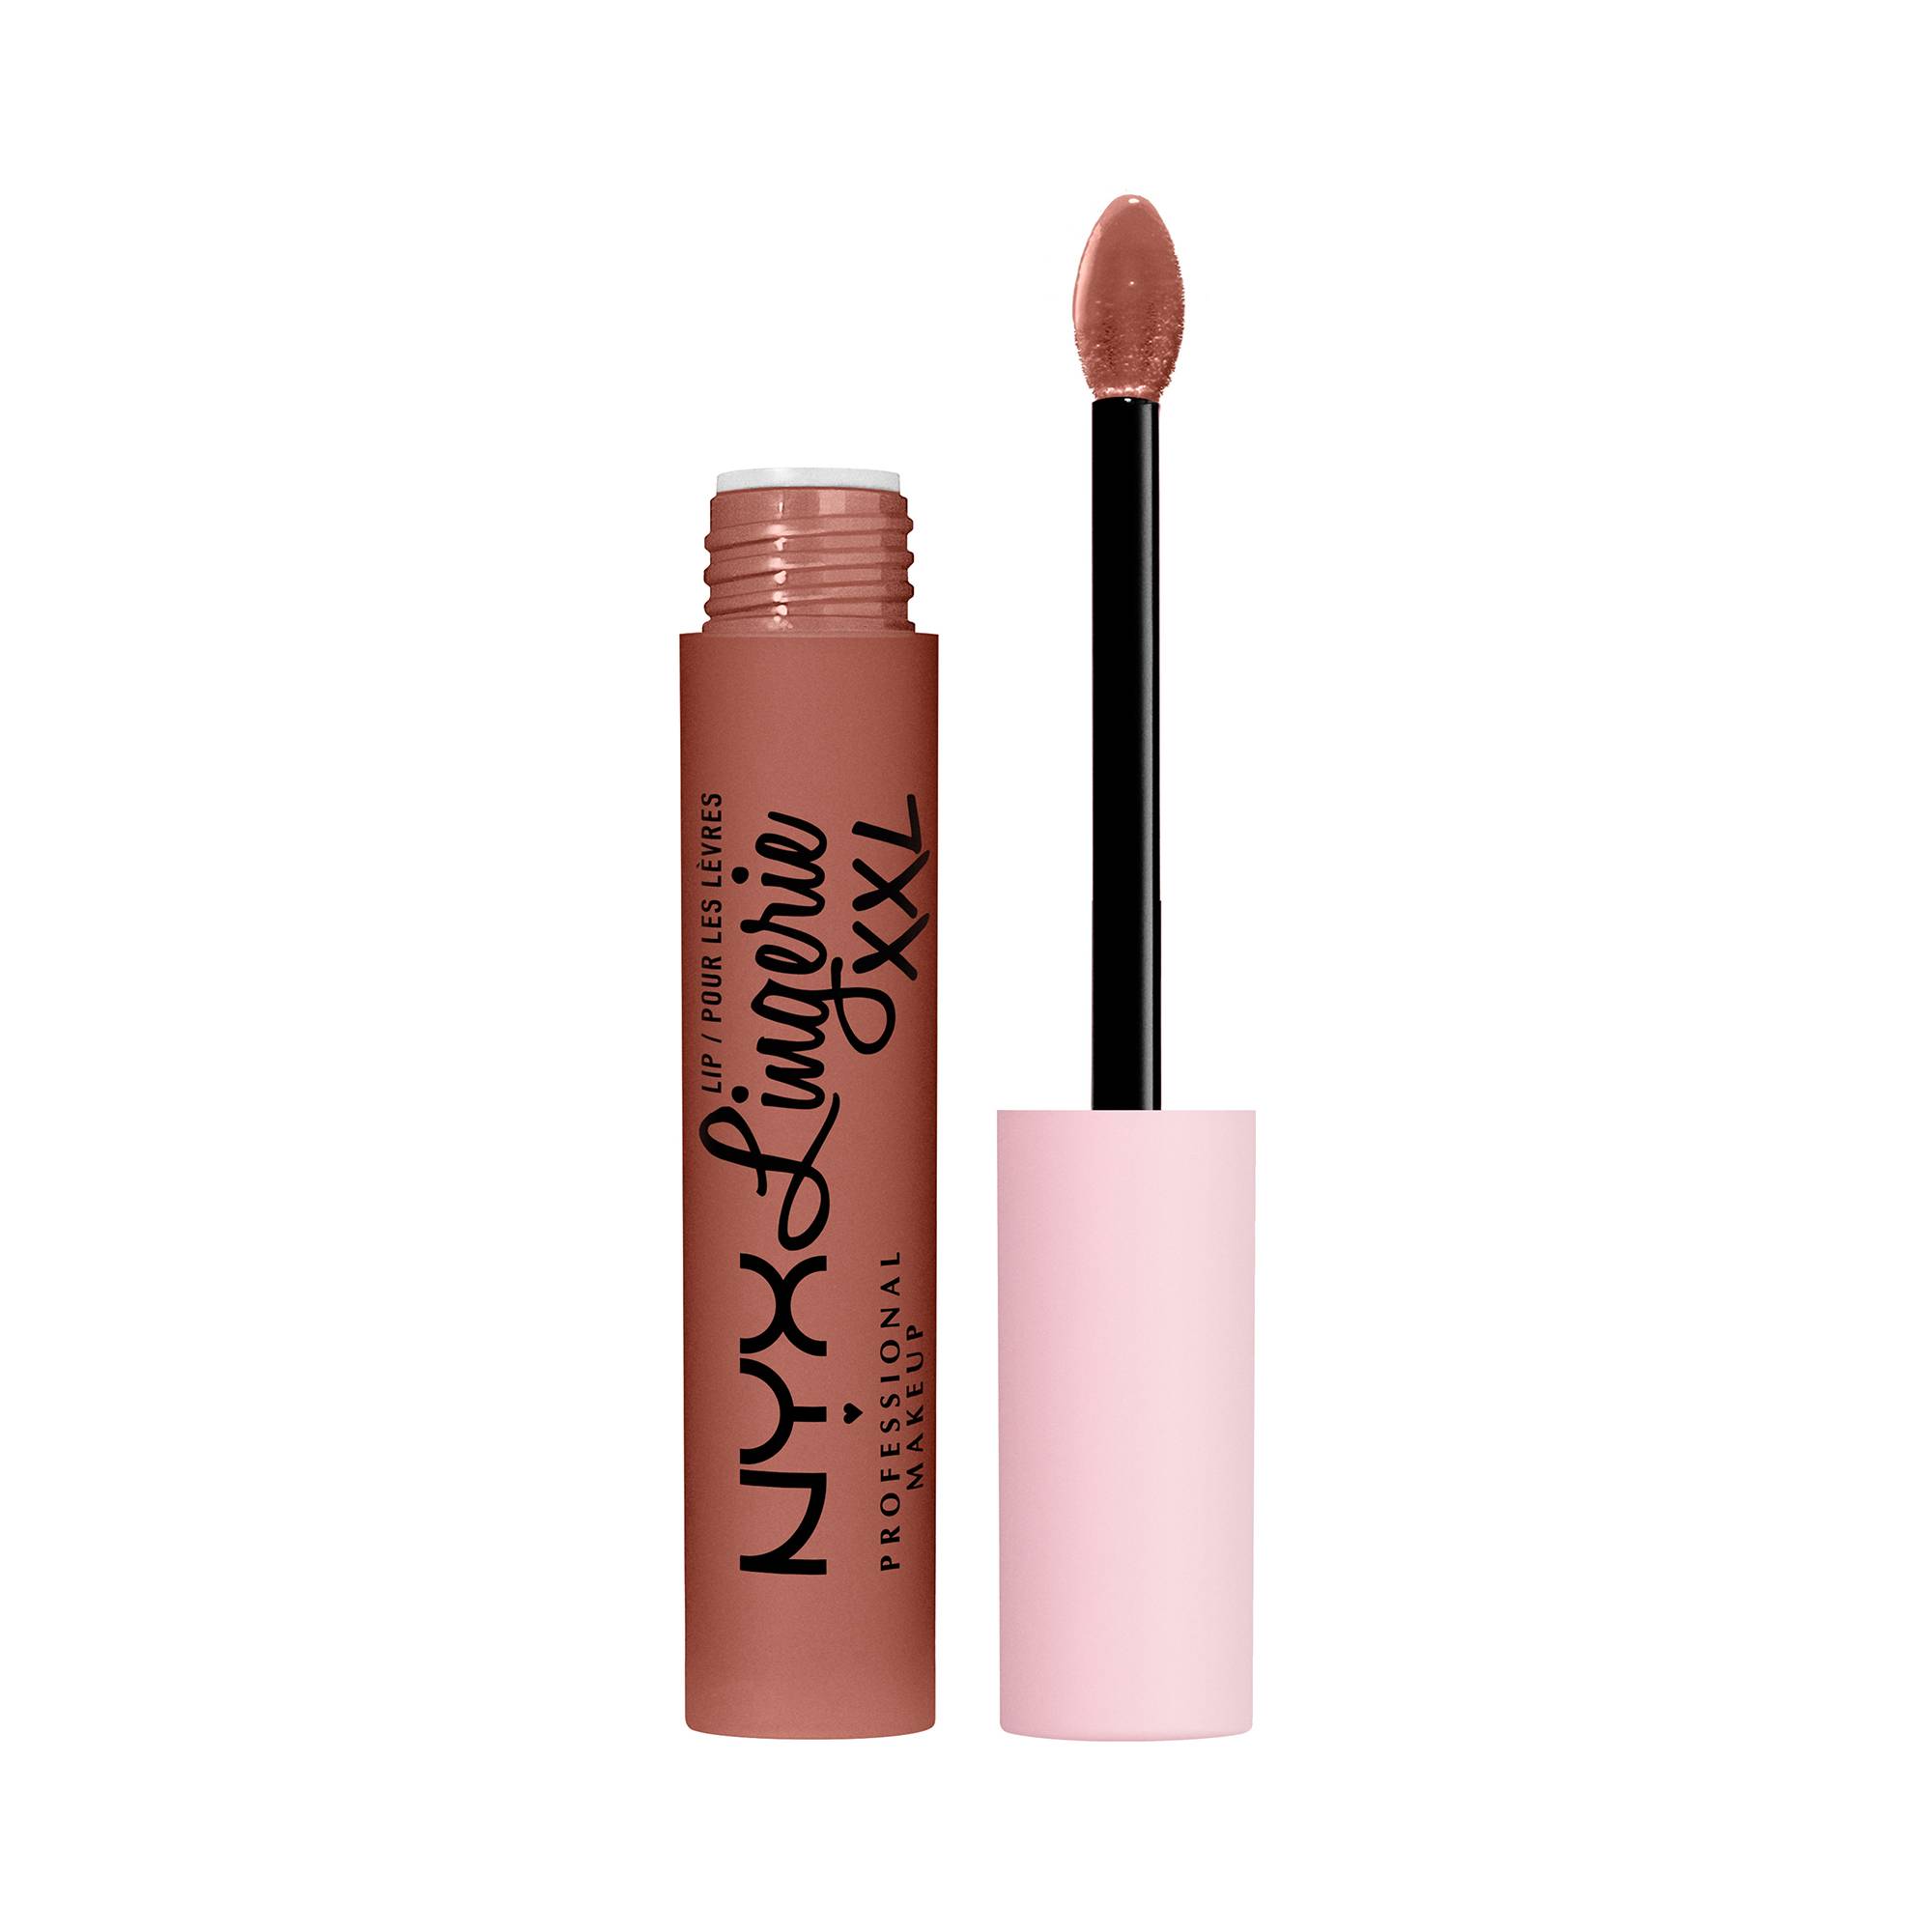 Rouge à lèvres Mat Lip Lingerie XXL - Candela Babe de la marque NYX Professional Makeup Contenance 4g - 1